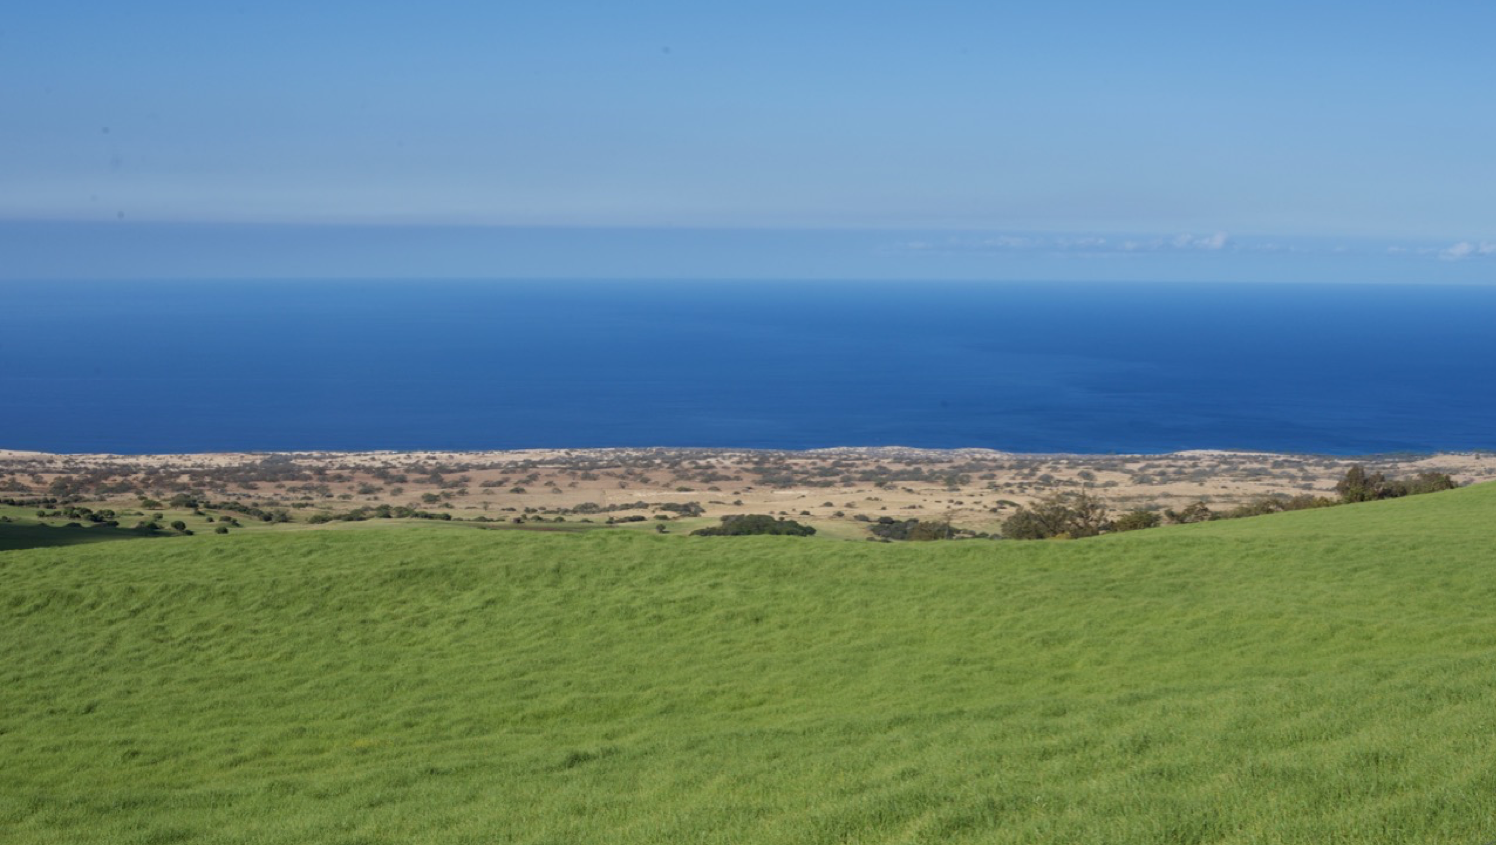 Vergrösserte Ansicht: Feldstandort mit sichtbarem Klimagradienten: Je näher an der Küste, desto brauner wird das Gras. Foto: Canadian Light Source